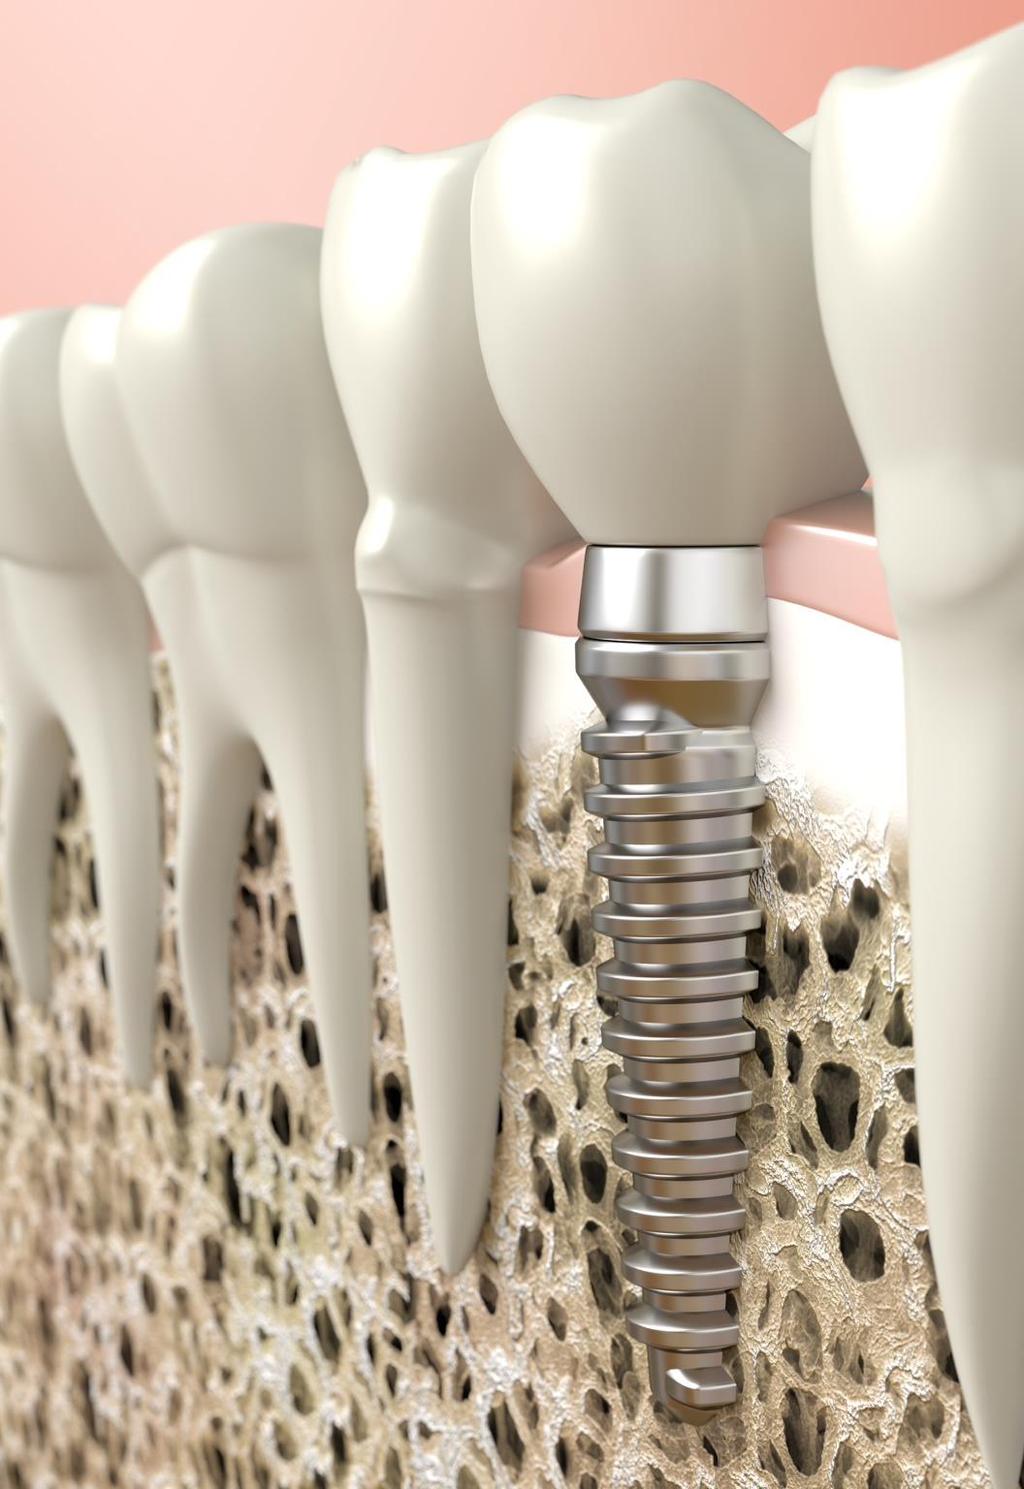 Tipos de enxertos O enxerto ósseo pode contribuir para aumento de volume ósseo em regiões onde exista demanda reconstrutiva prévia à instalação de implante.